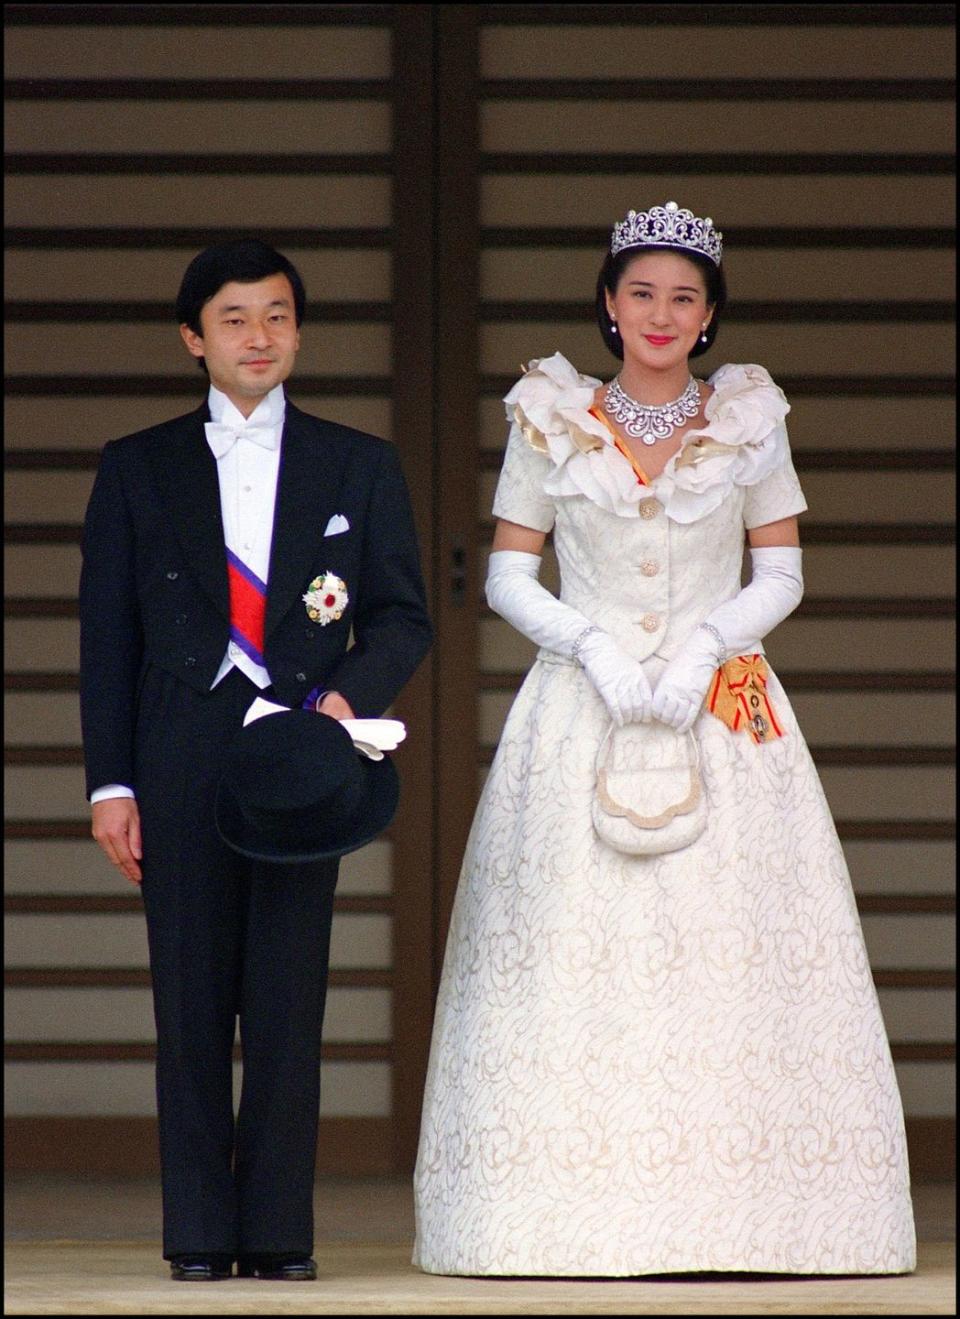 Prince Naruhito and Princess Masako of Japan